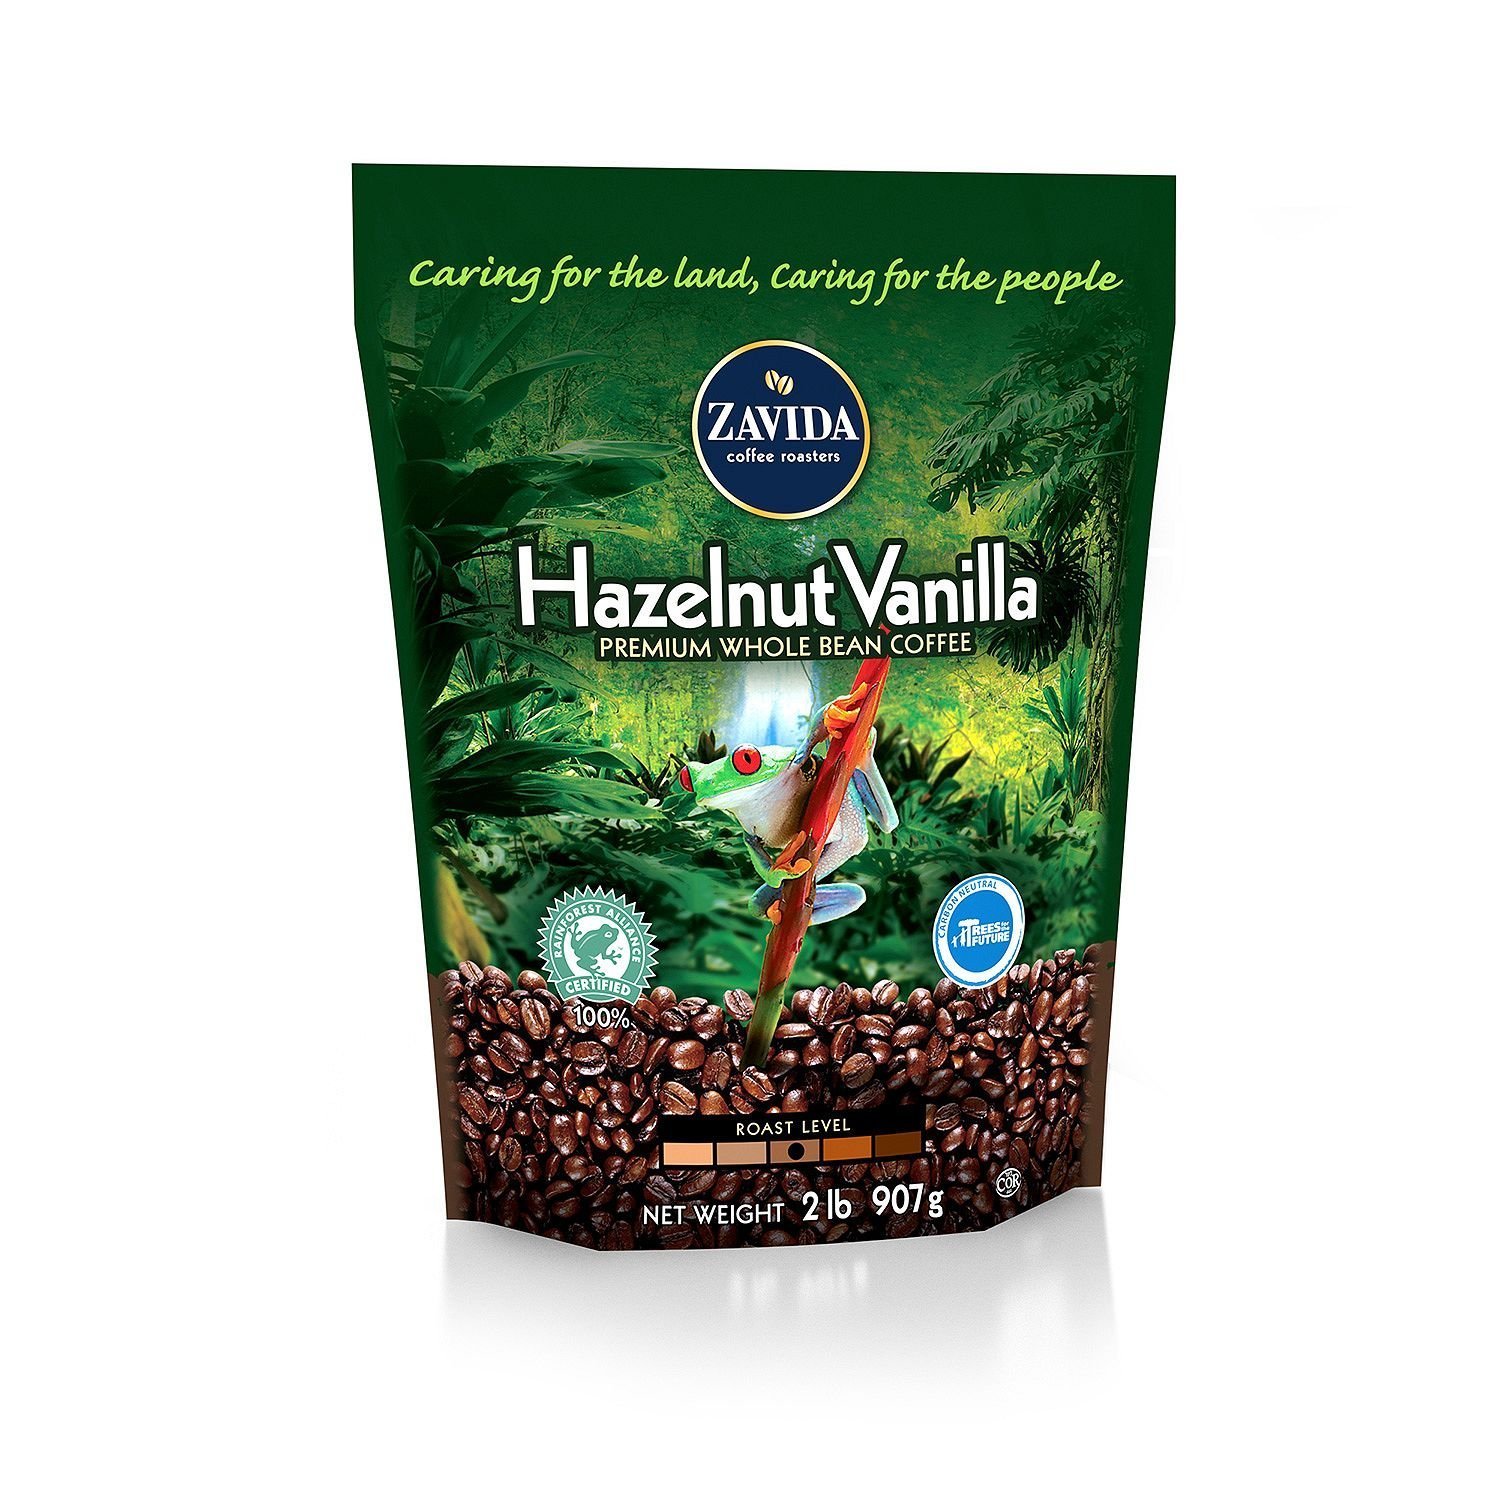 ■訳あり■2,250円引き Zavida Coffee社 Hazelnut Vanilla Whole Bean ザビダコーヒーヘーゼルナッツバニラコーヒー豆907g1袋 1